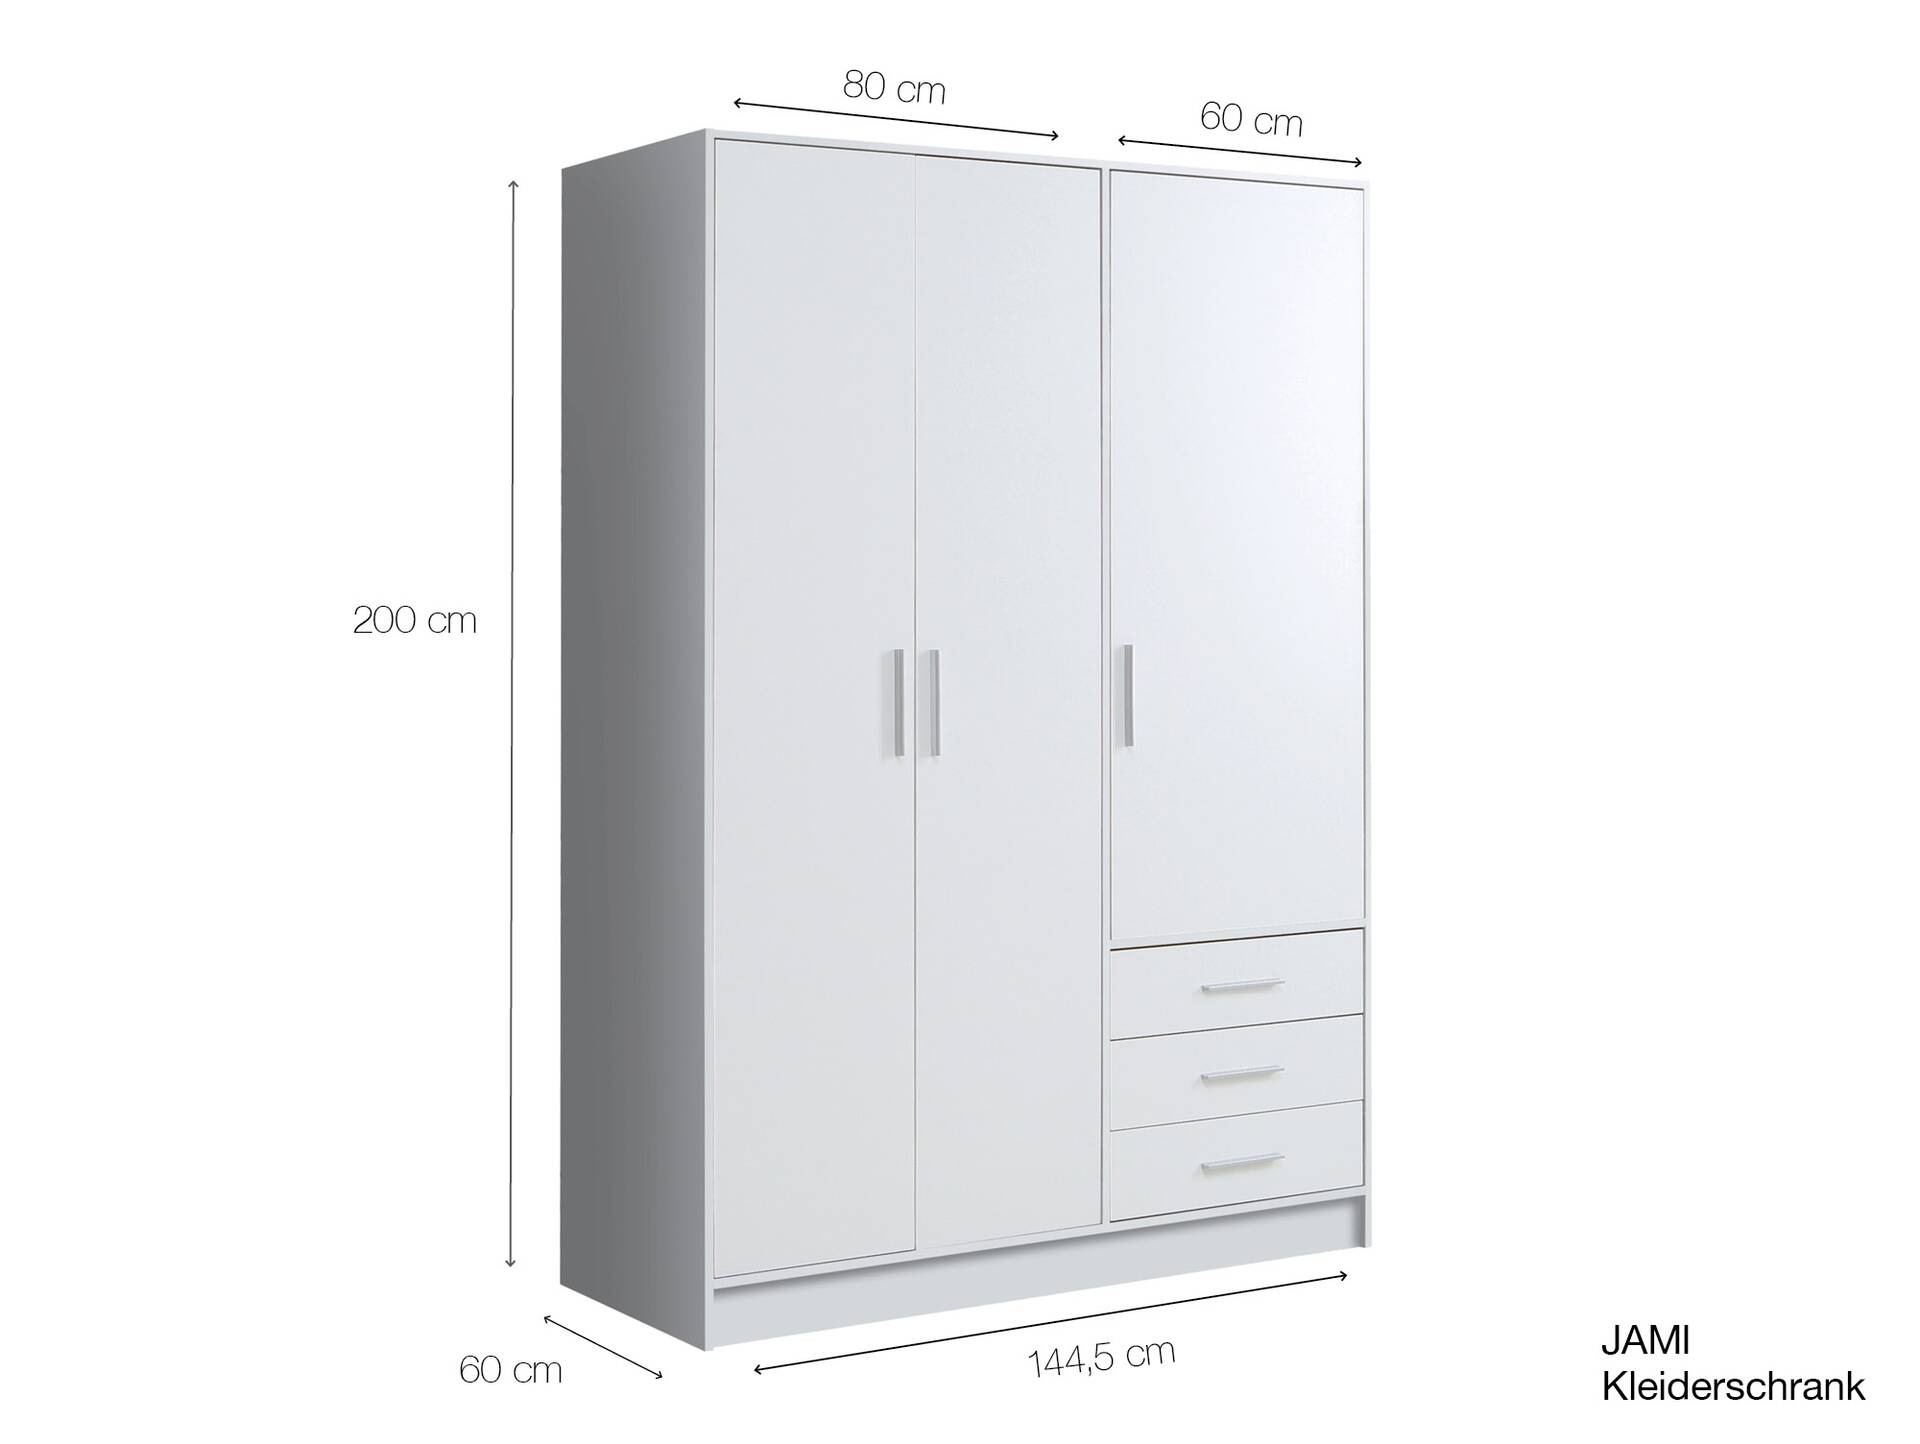 JAMI Kleiderschrank 3-trg mit 3 Schubkästen, Material Dekorspanplatte betonfarbig / weiss